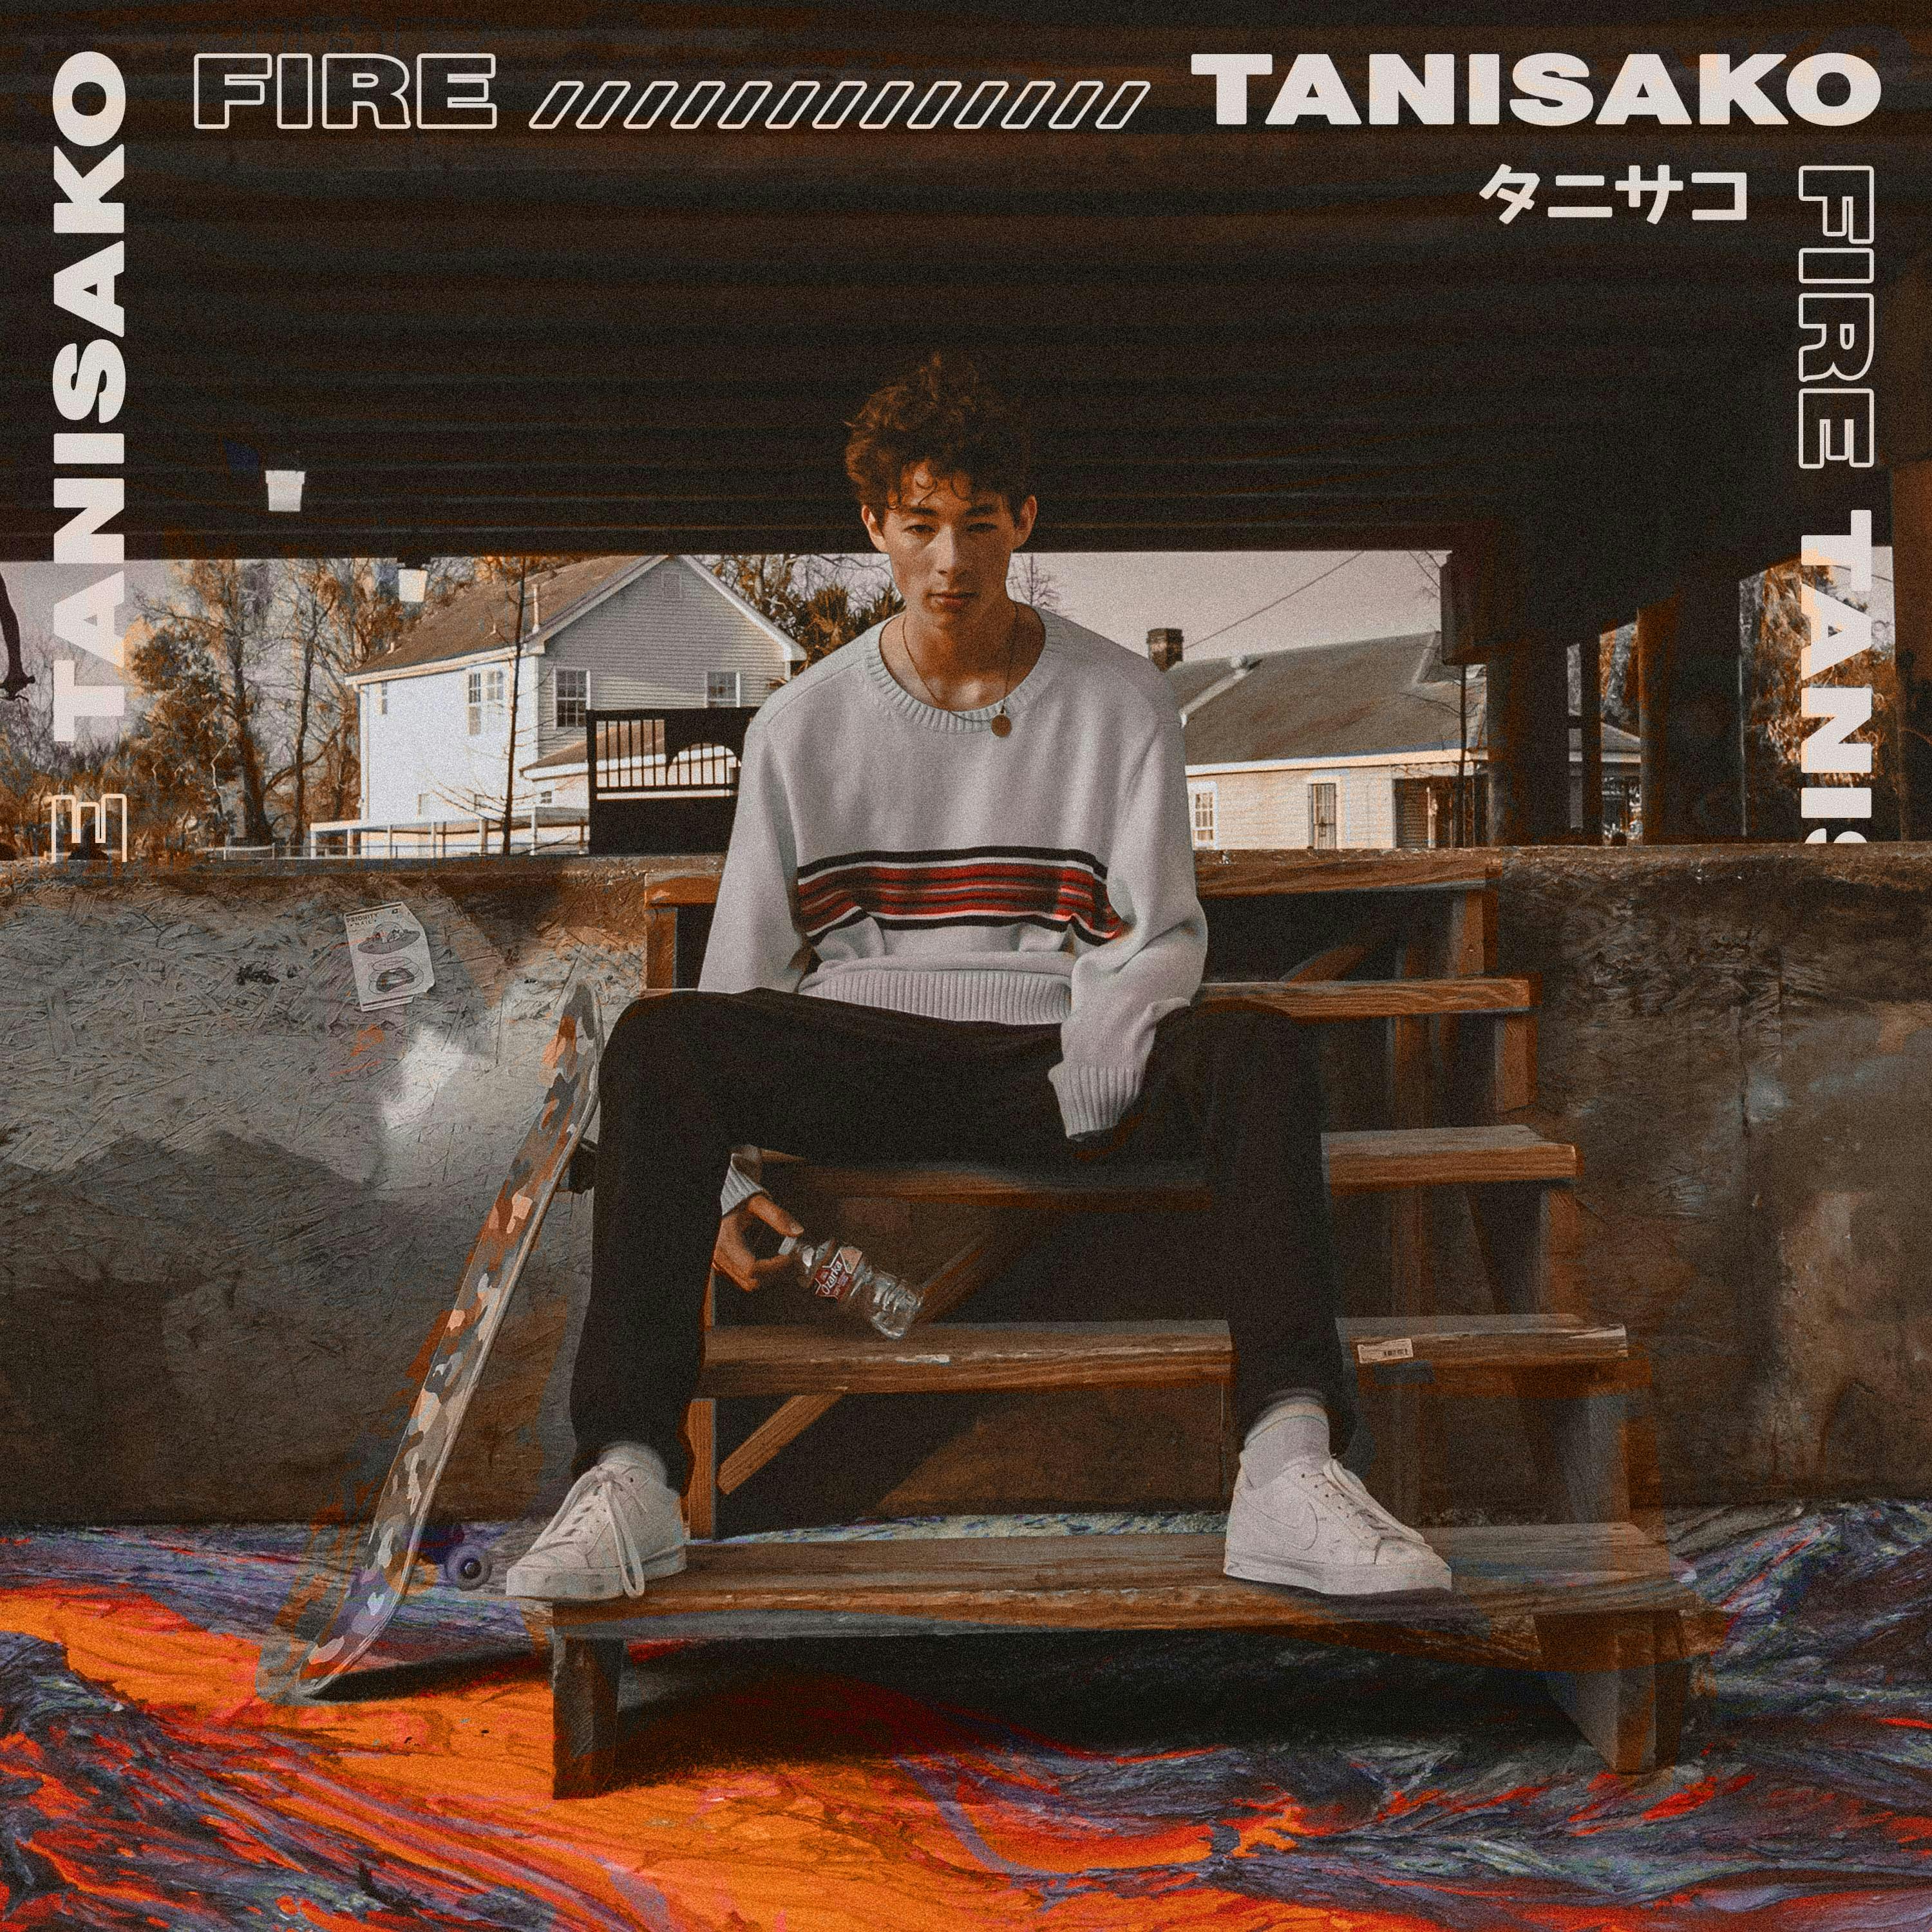 Cover art for Tanisako's song: Fire